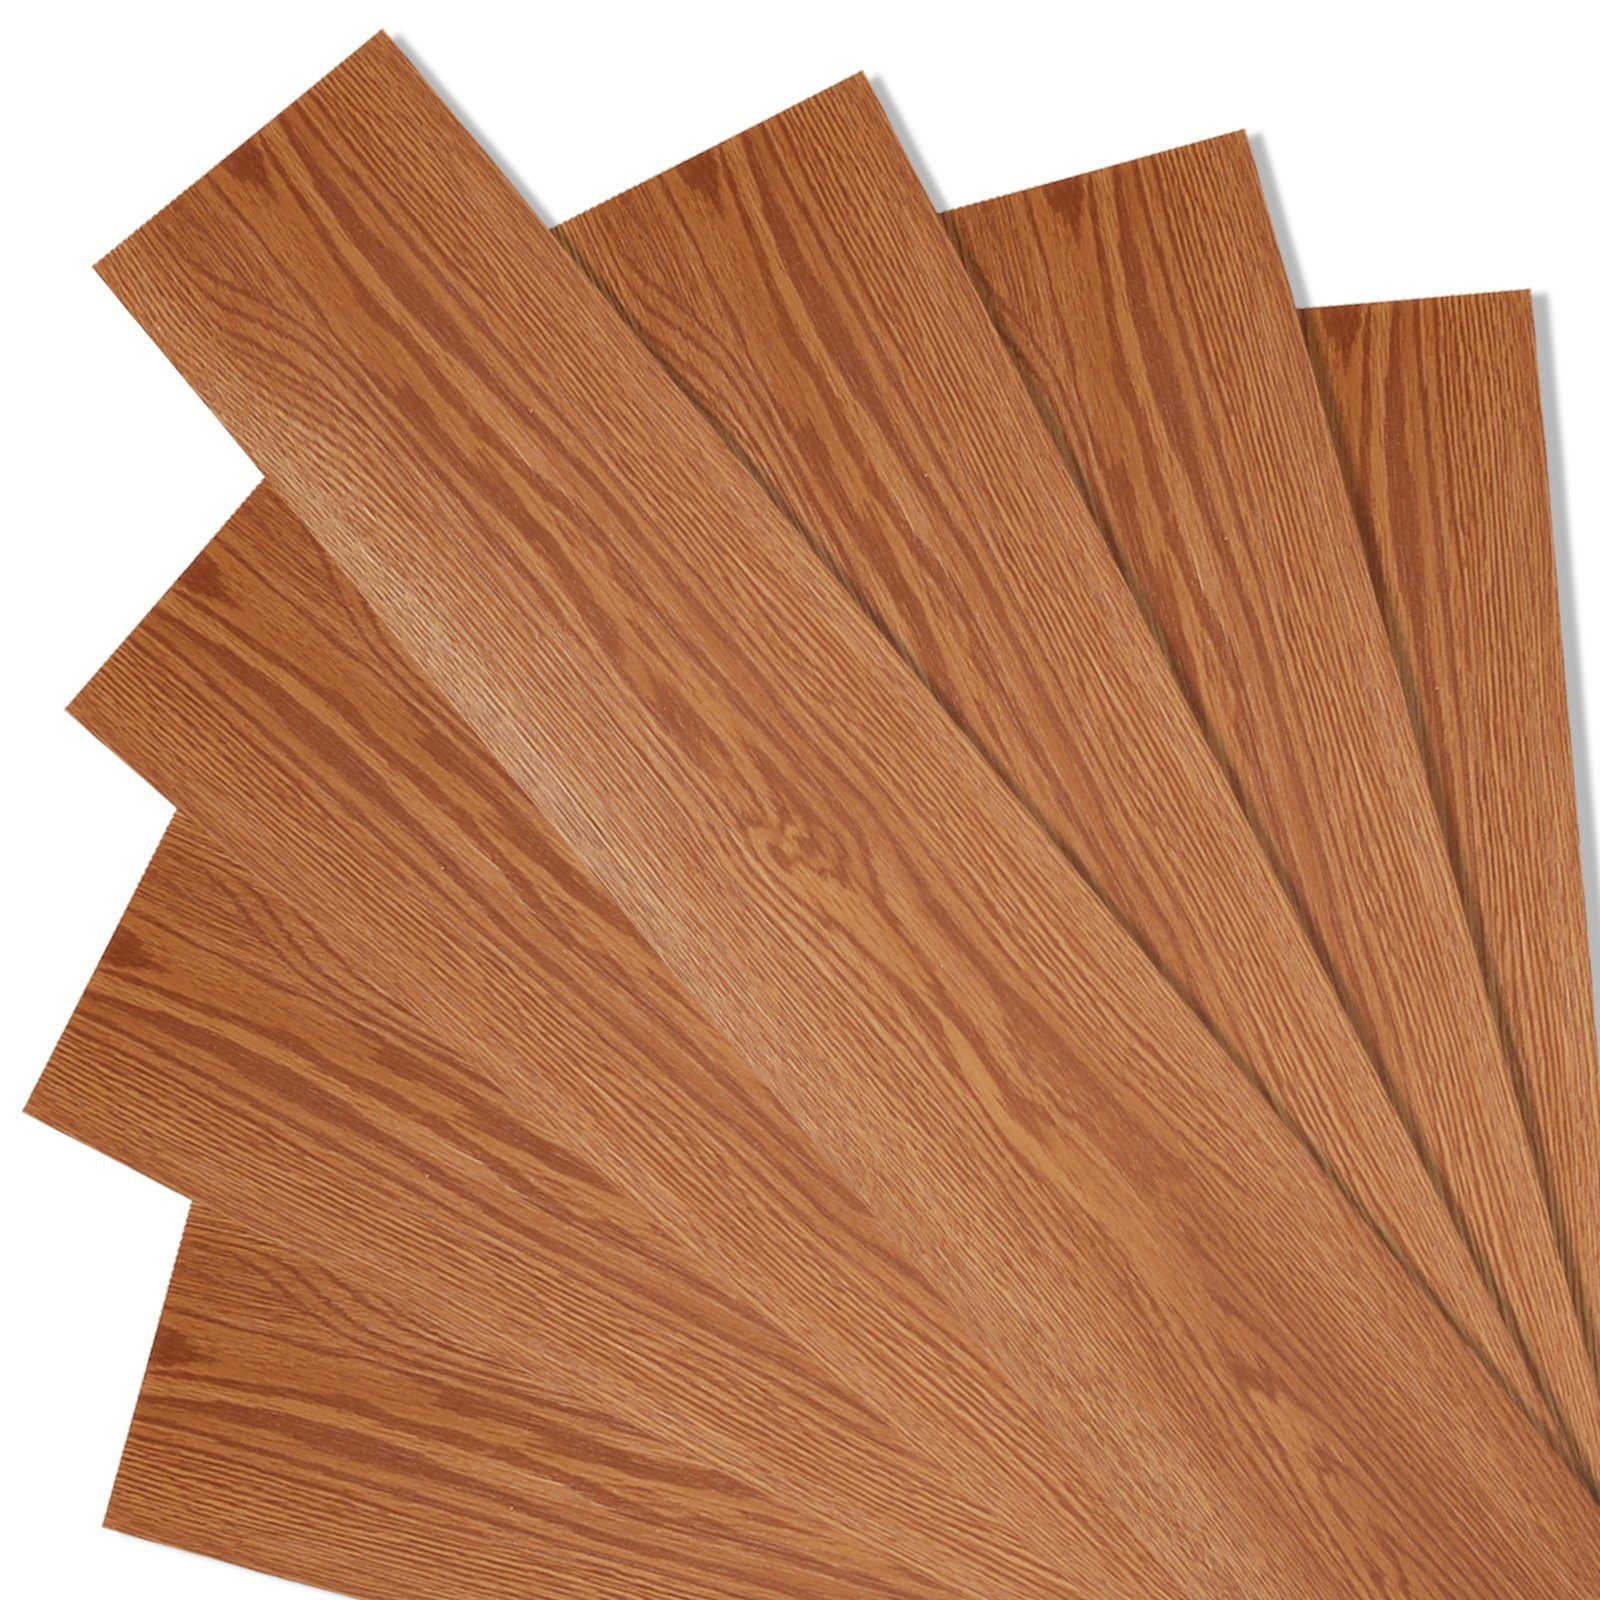 TolleTour Vinylboden Vinylboden PVC Planke ca.1 m² - 10 m²,selbstklebend,Oak, selbstklebend Classic Warm Oak